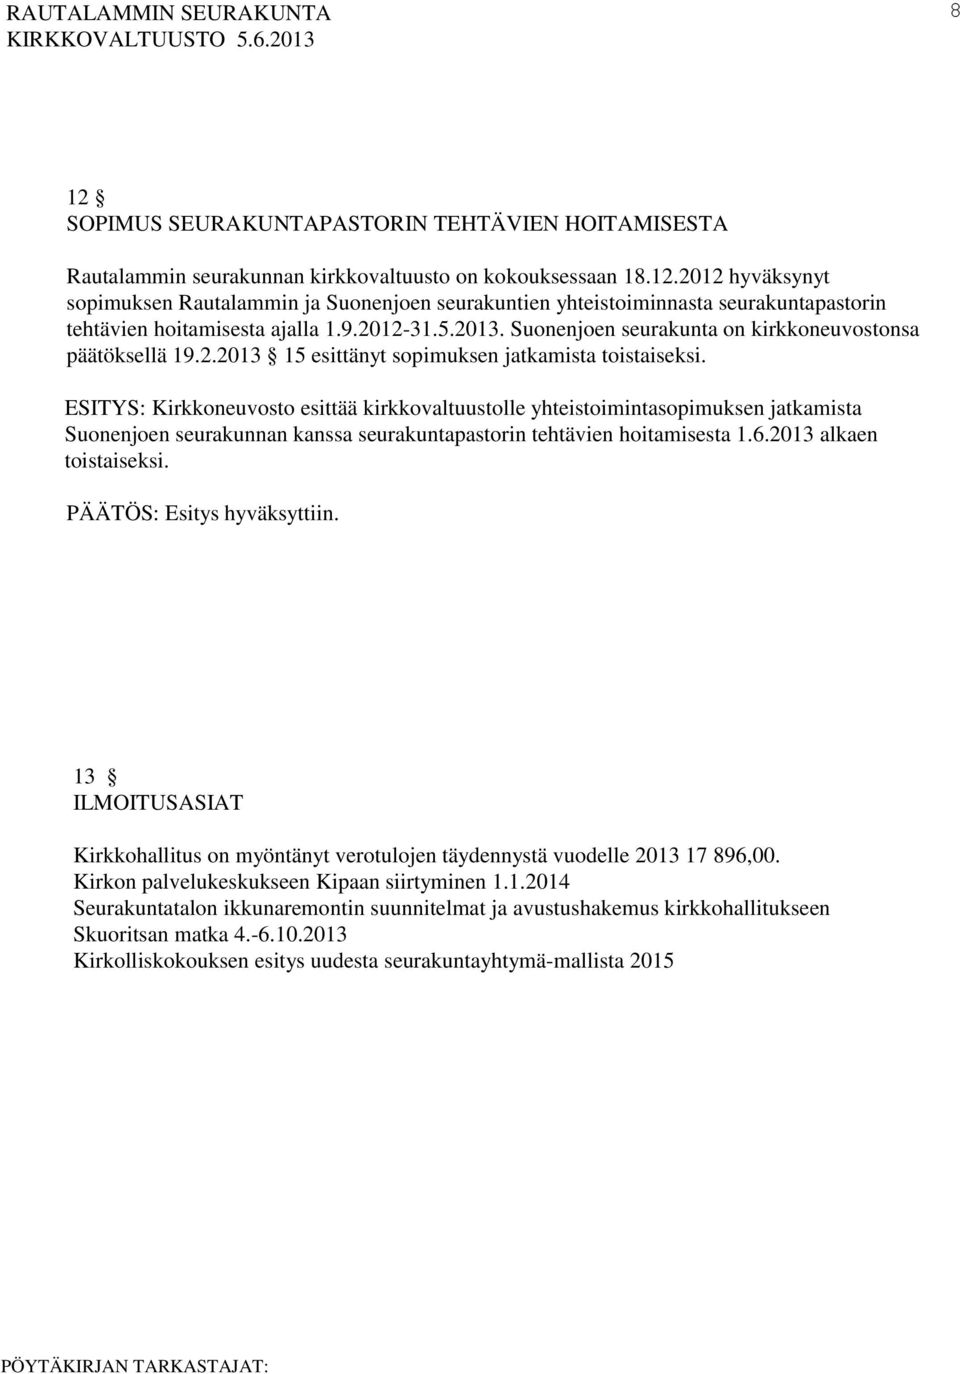 ESITYS: Kirkkoneuvosto esittää kirkkovaltuustolle yhteistoimintasopimuksen jatkamista Suonenjoen seurakunnan kanssa seurakuntapastorin tehtävien hoitamisesta 1.6.2013 alkaen toistaiseksi.